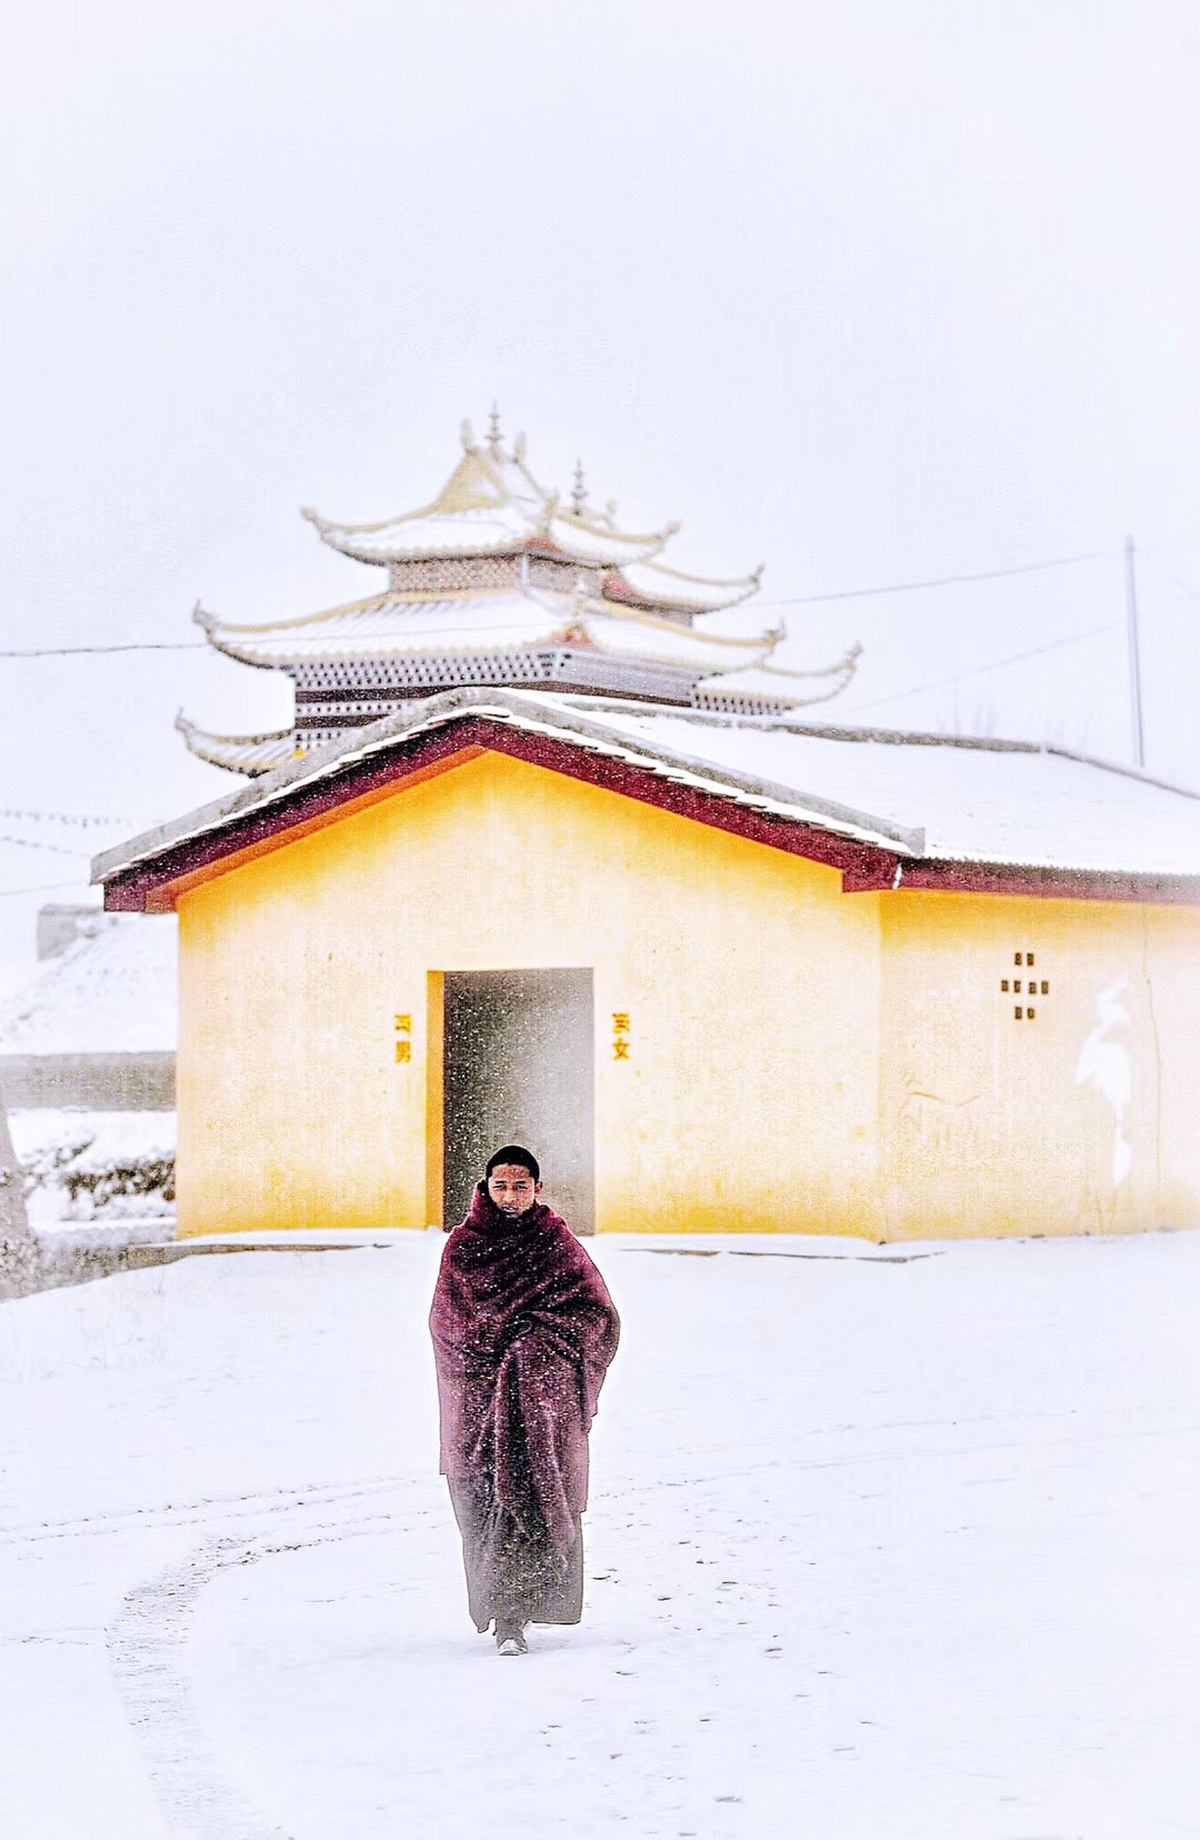 一个穿着皮草大衣的男人穿过雪地经过一栋大楼